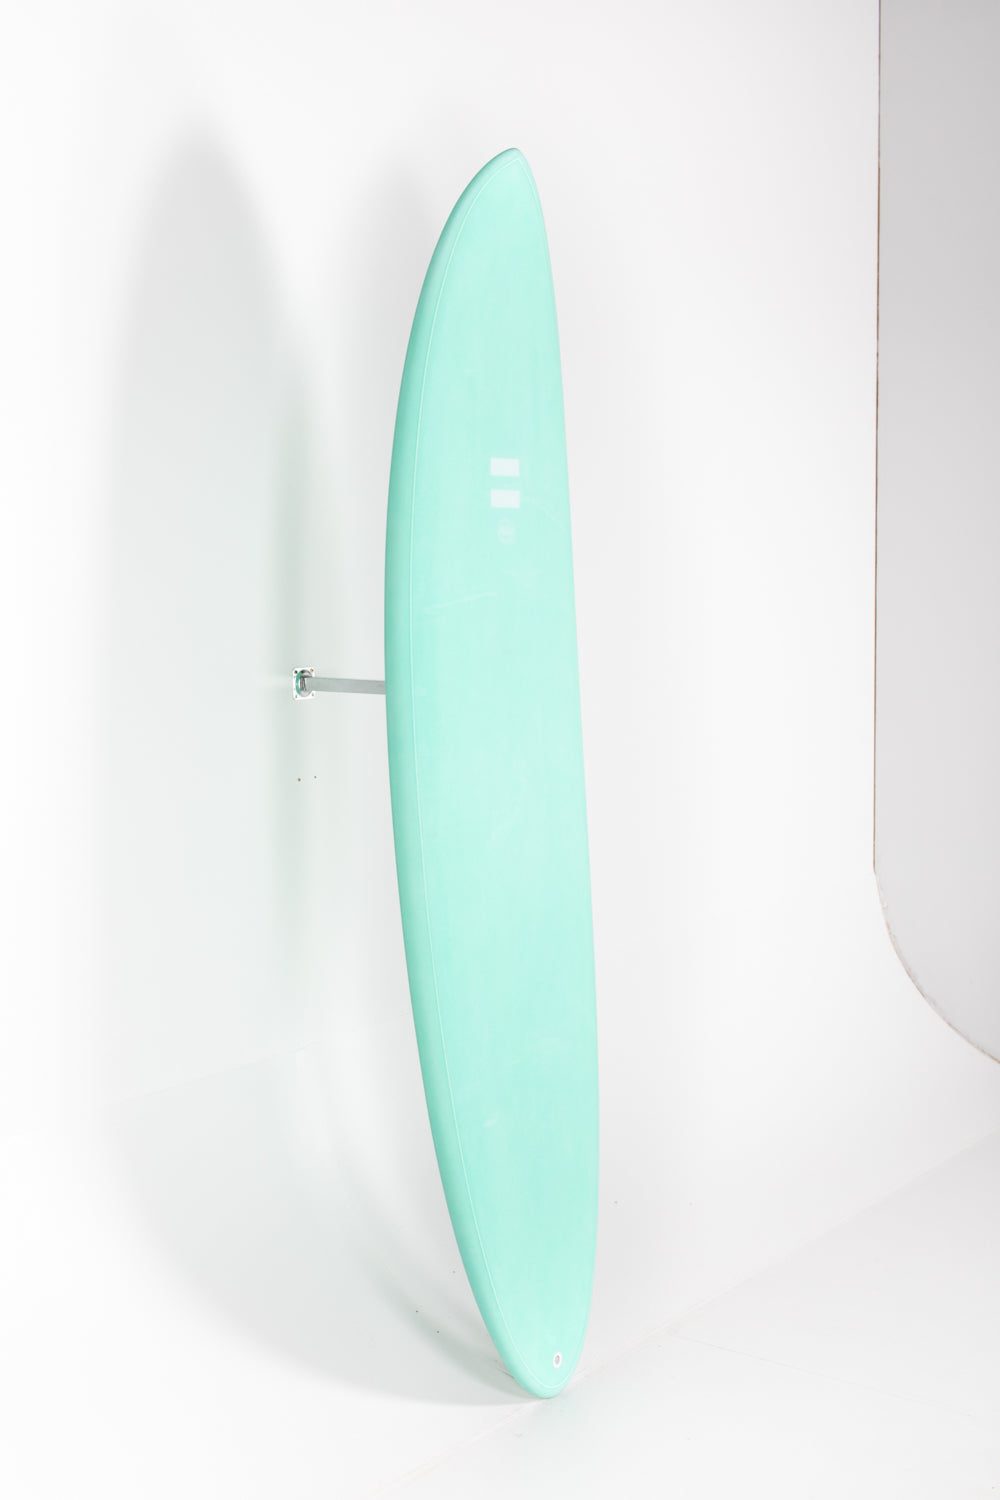 
                  
                    Pukas Surf Shop - Indio Endurance - THE EGG Aqua Mint - 6´8 x 21 1/2 x 2 3/4 - 46L
                  
                